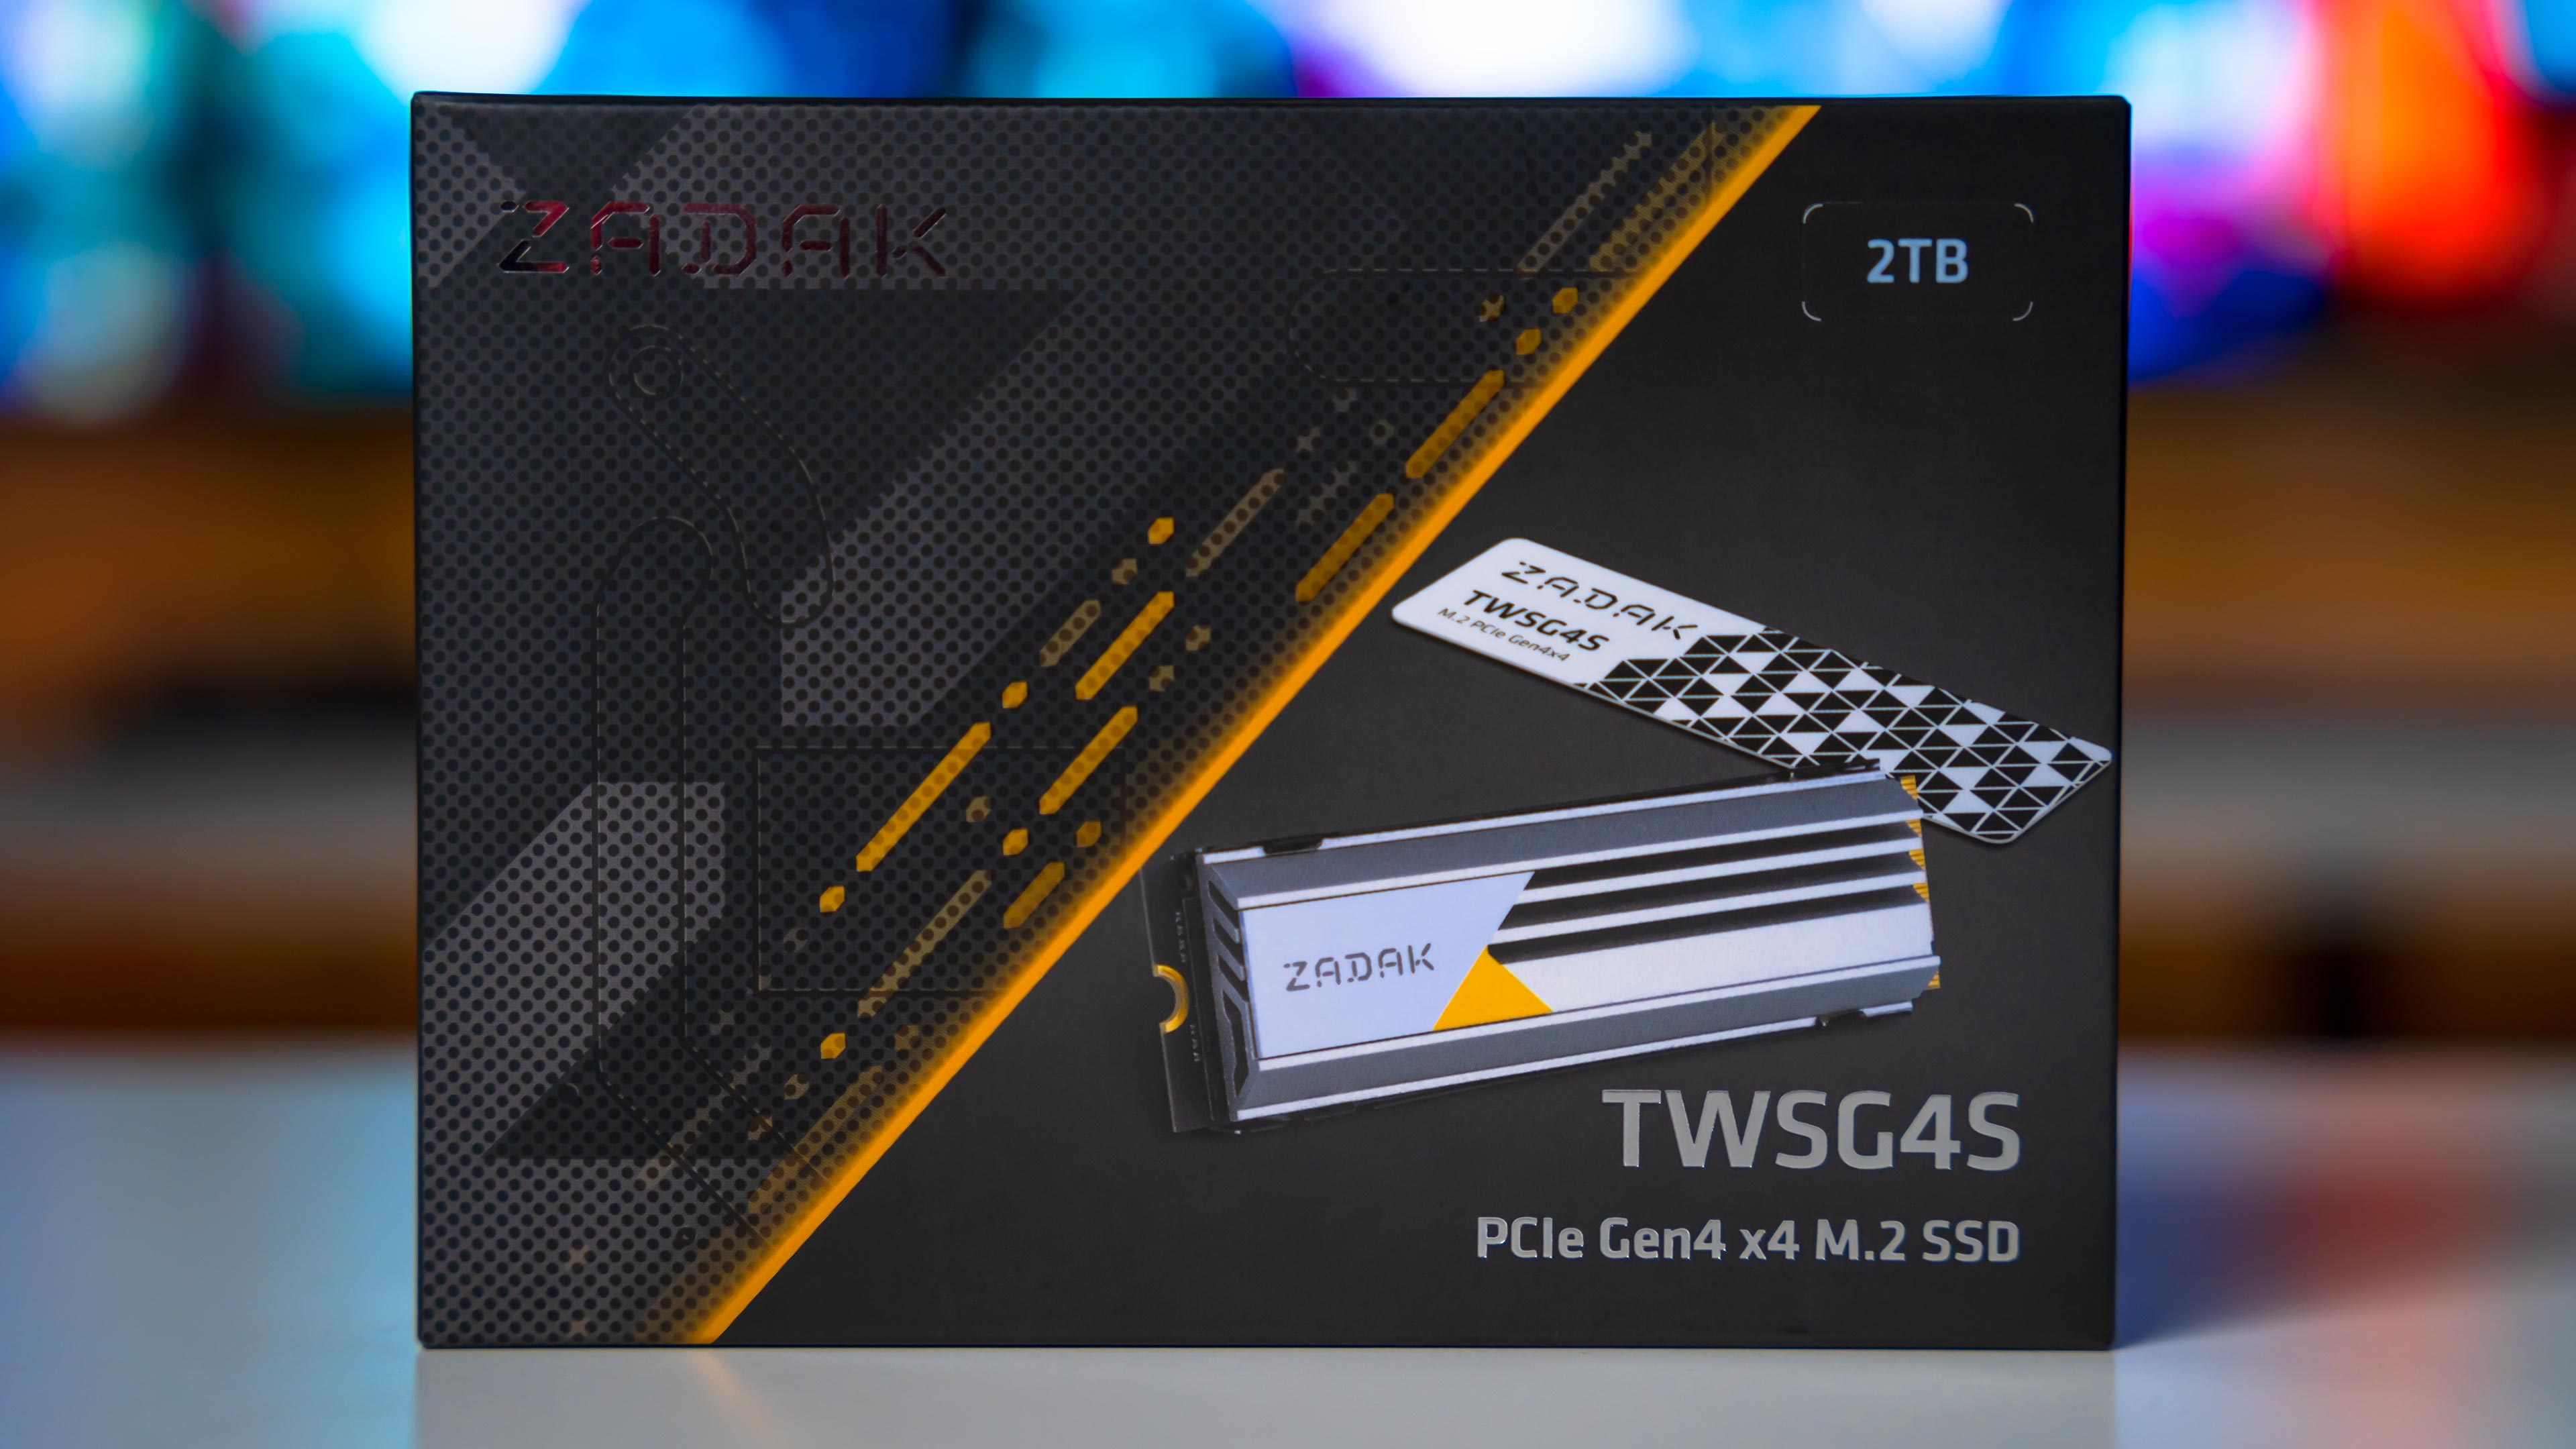 Zadak TWSG4S 2TB GEN4 M.2 Box (1)